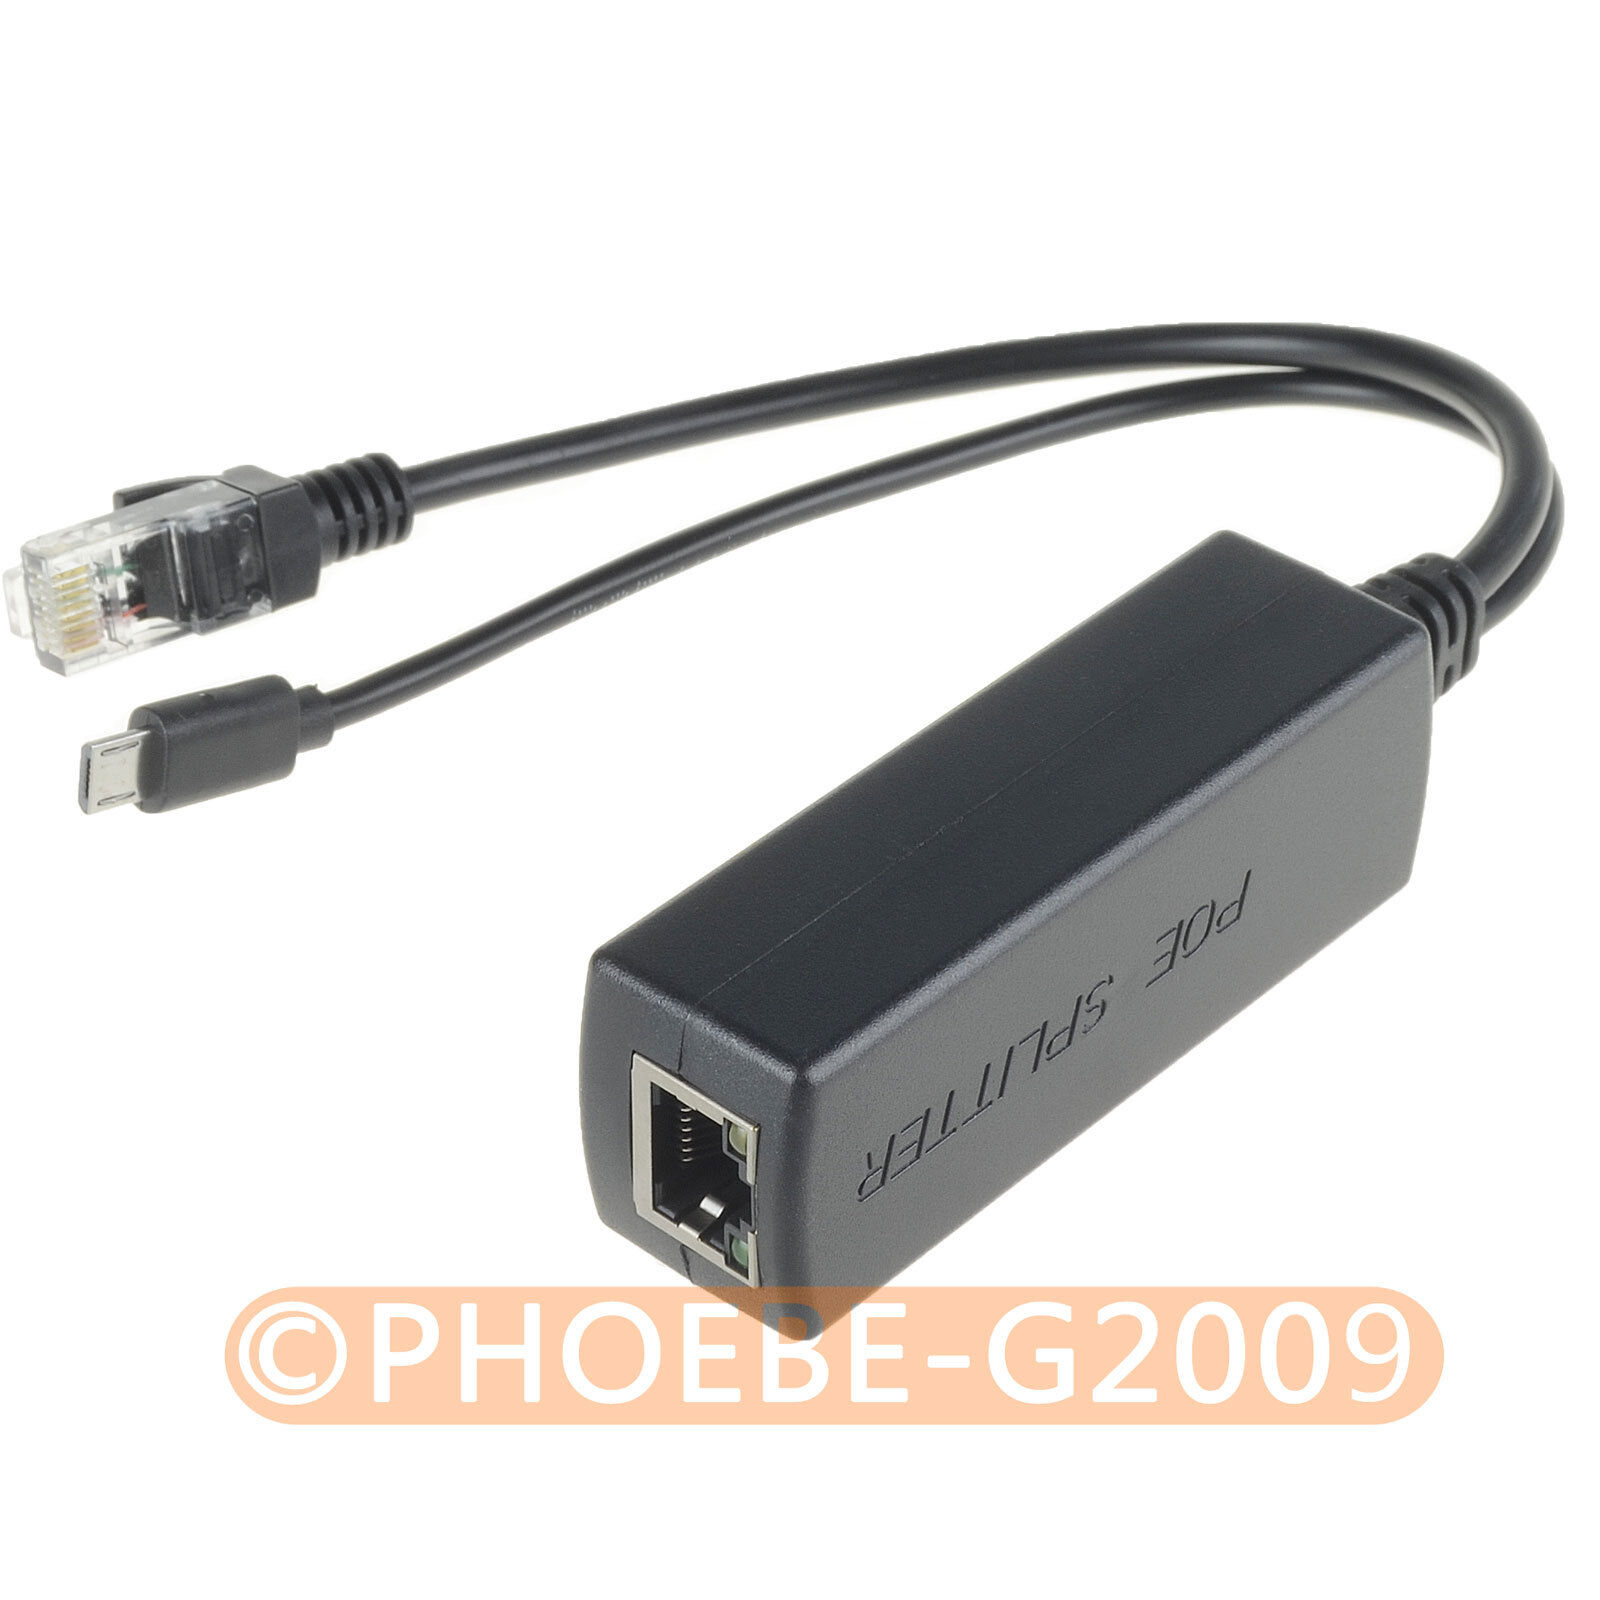 12pcs Gigabit Active PoE Splitter 5V Micro USB for ASUS Tinker Development Board